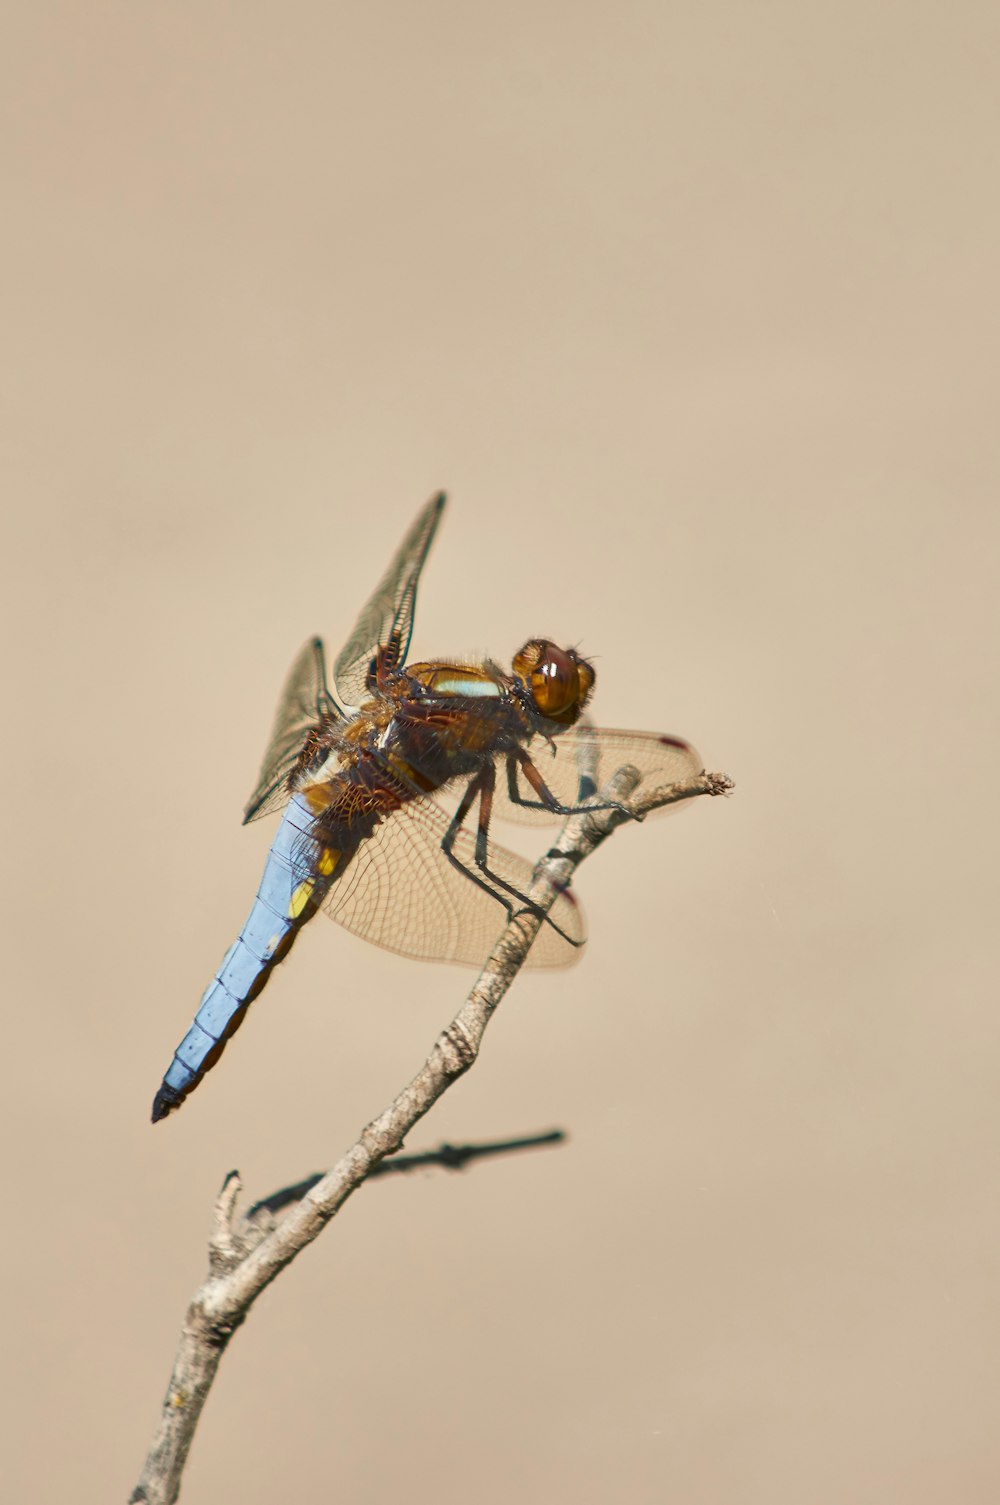 libellula blu e marrone appollaiata su gambo marrone in fotografia ravvicinata durante il giorno